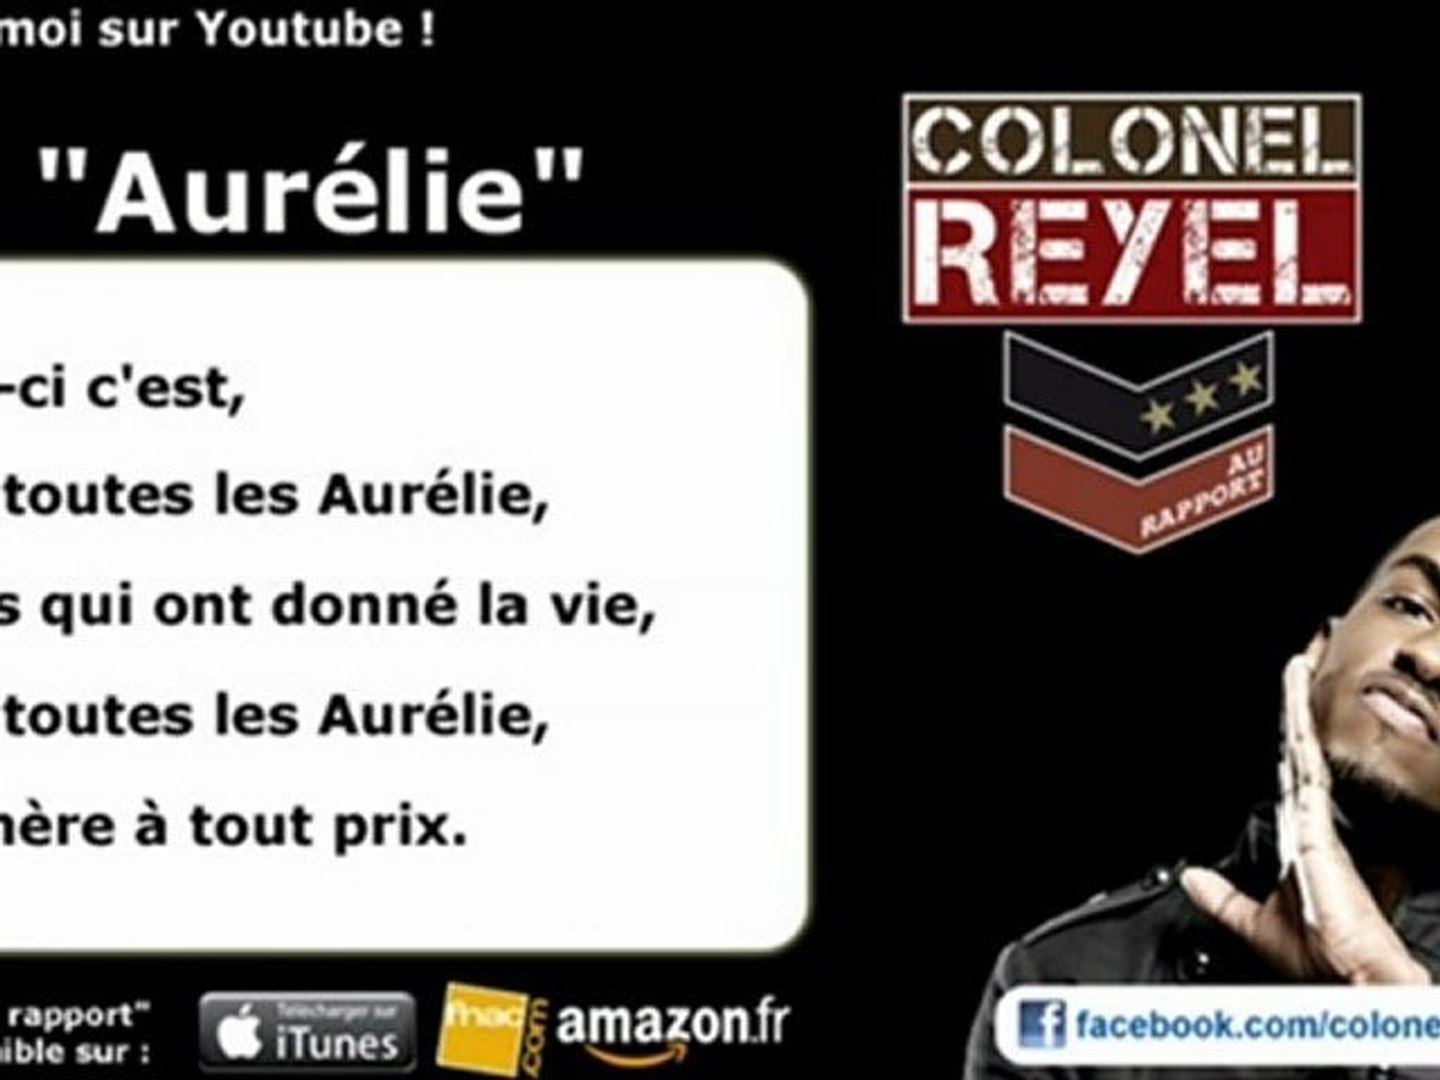 Colonel Reyel - Aurélie - Paroles (officiel) - Vidéo Dailymotion